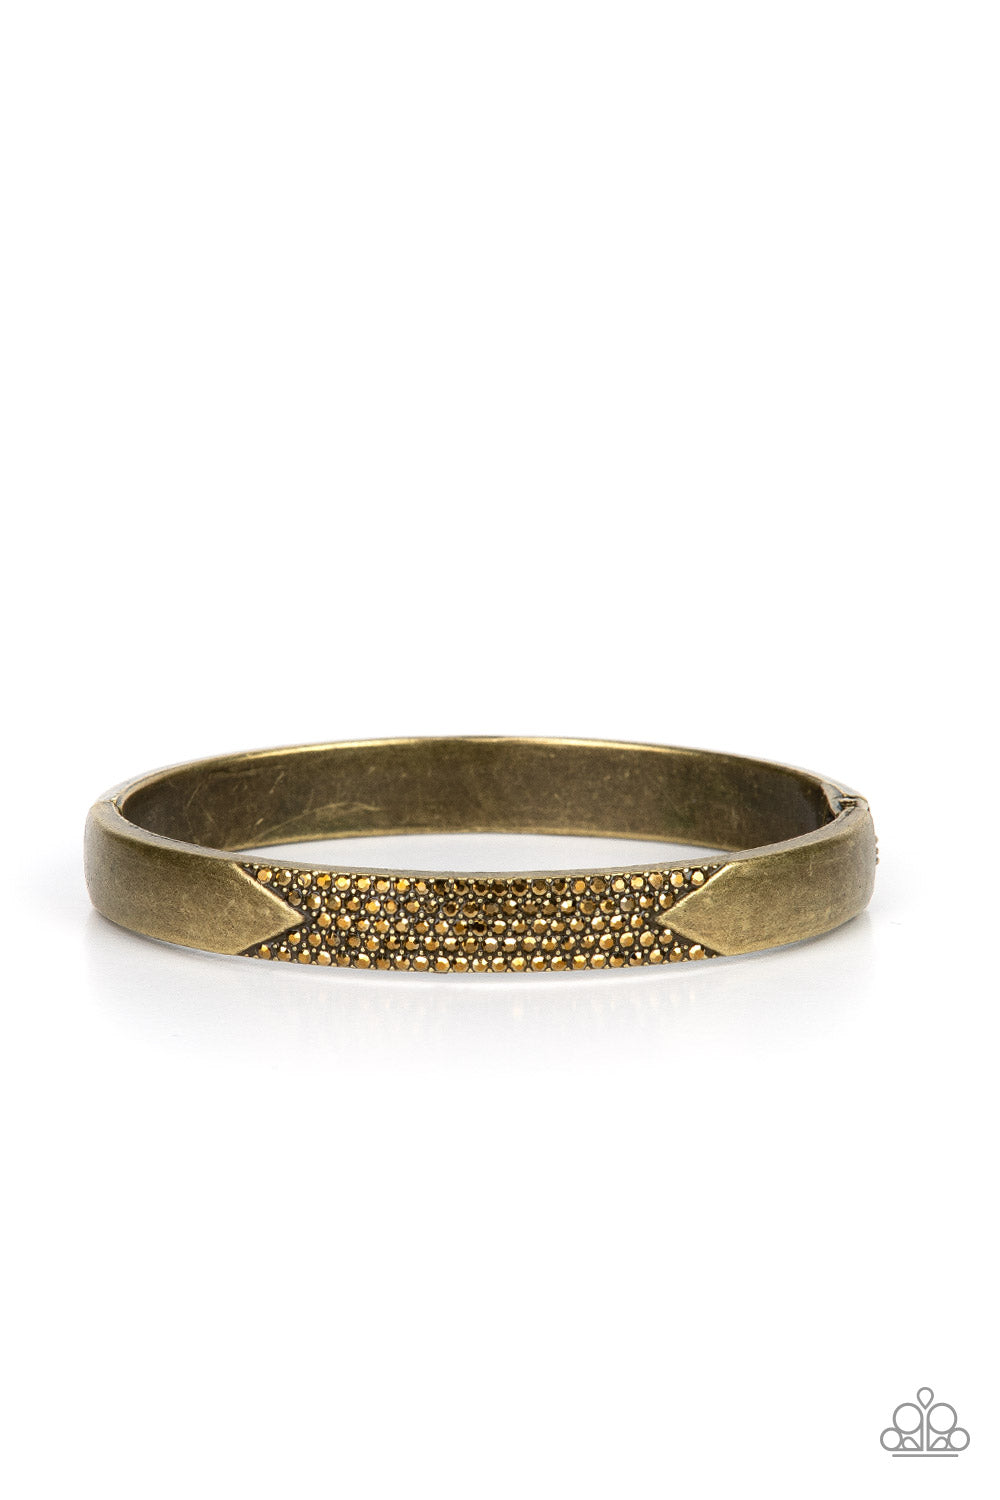 five-dollar-jewelry-radiant-edge-brass-bracelet-paparazzi-accessories